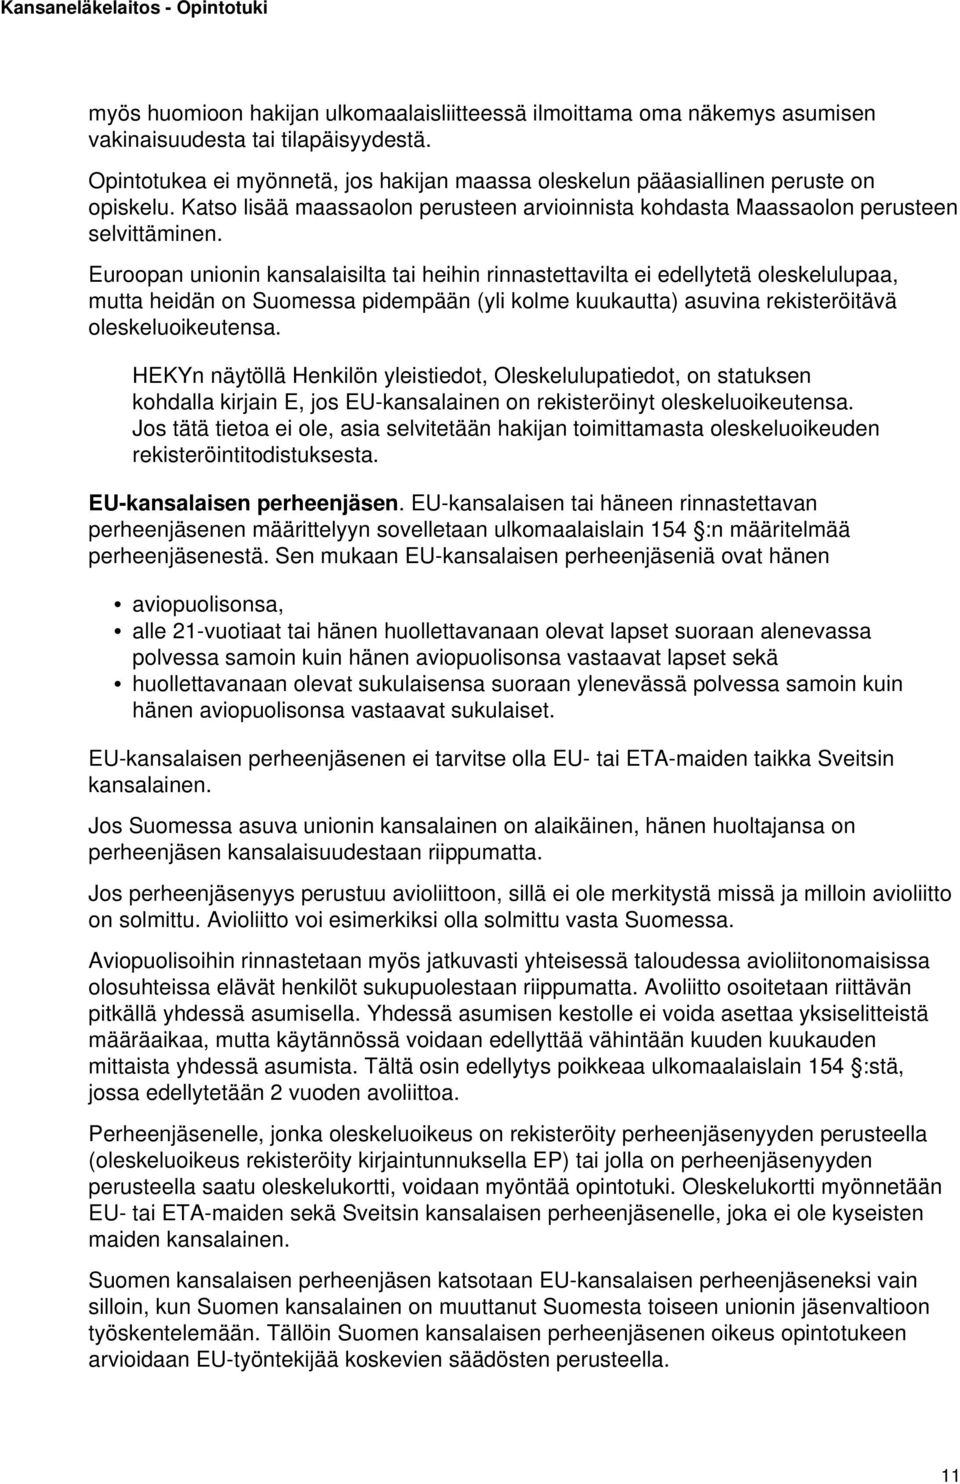 Euroopan unionin kansalaisilta tai heihin rinnastettavilta ei edellytetä oleskelulupaa, mutta heidän on Suomessa pidempään (yli kolme kuukautta) asuvina rekisteröitävä oleskeluoikeutensa.